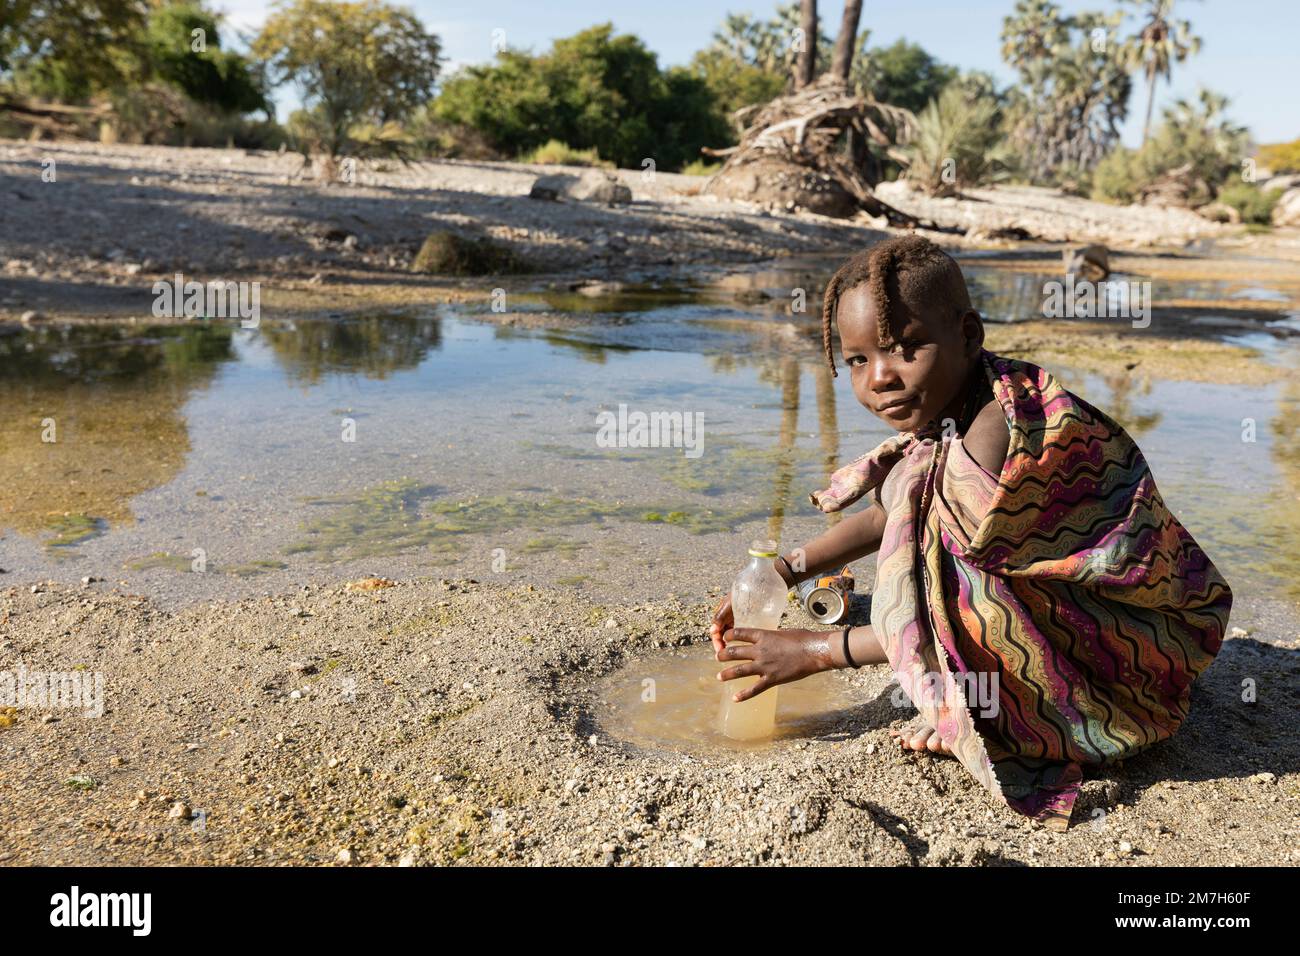 Joven Himba llenando una botella de agua en el río Kunene, Epupa, Namibia Foto de stock